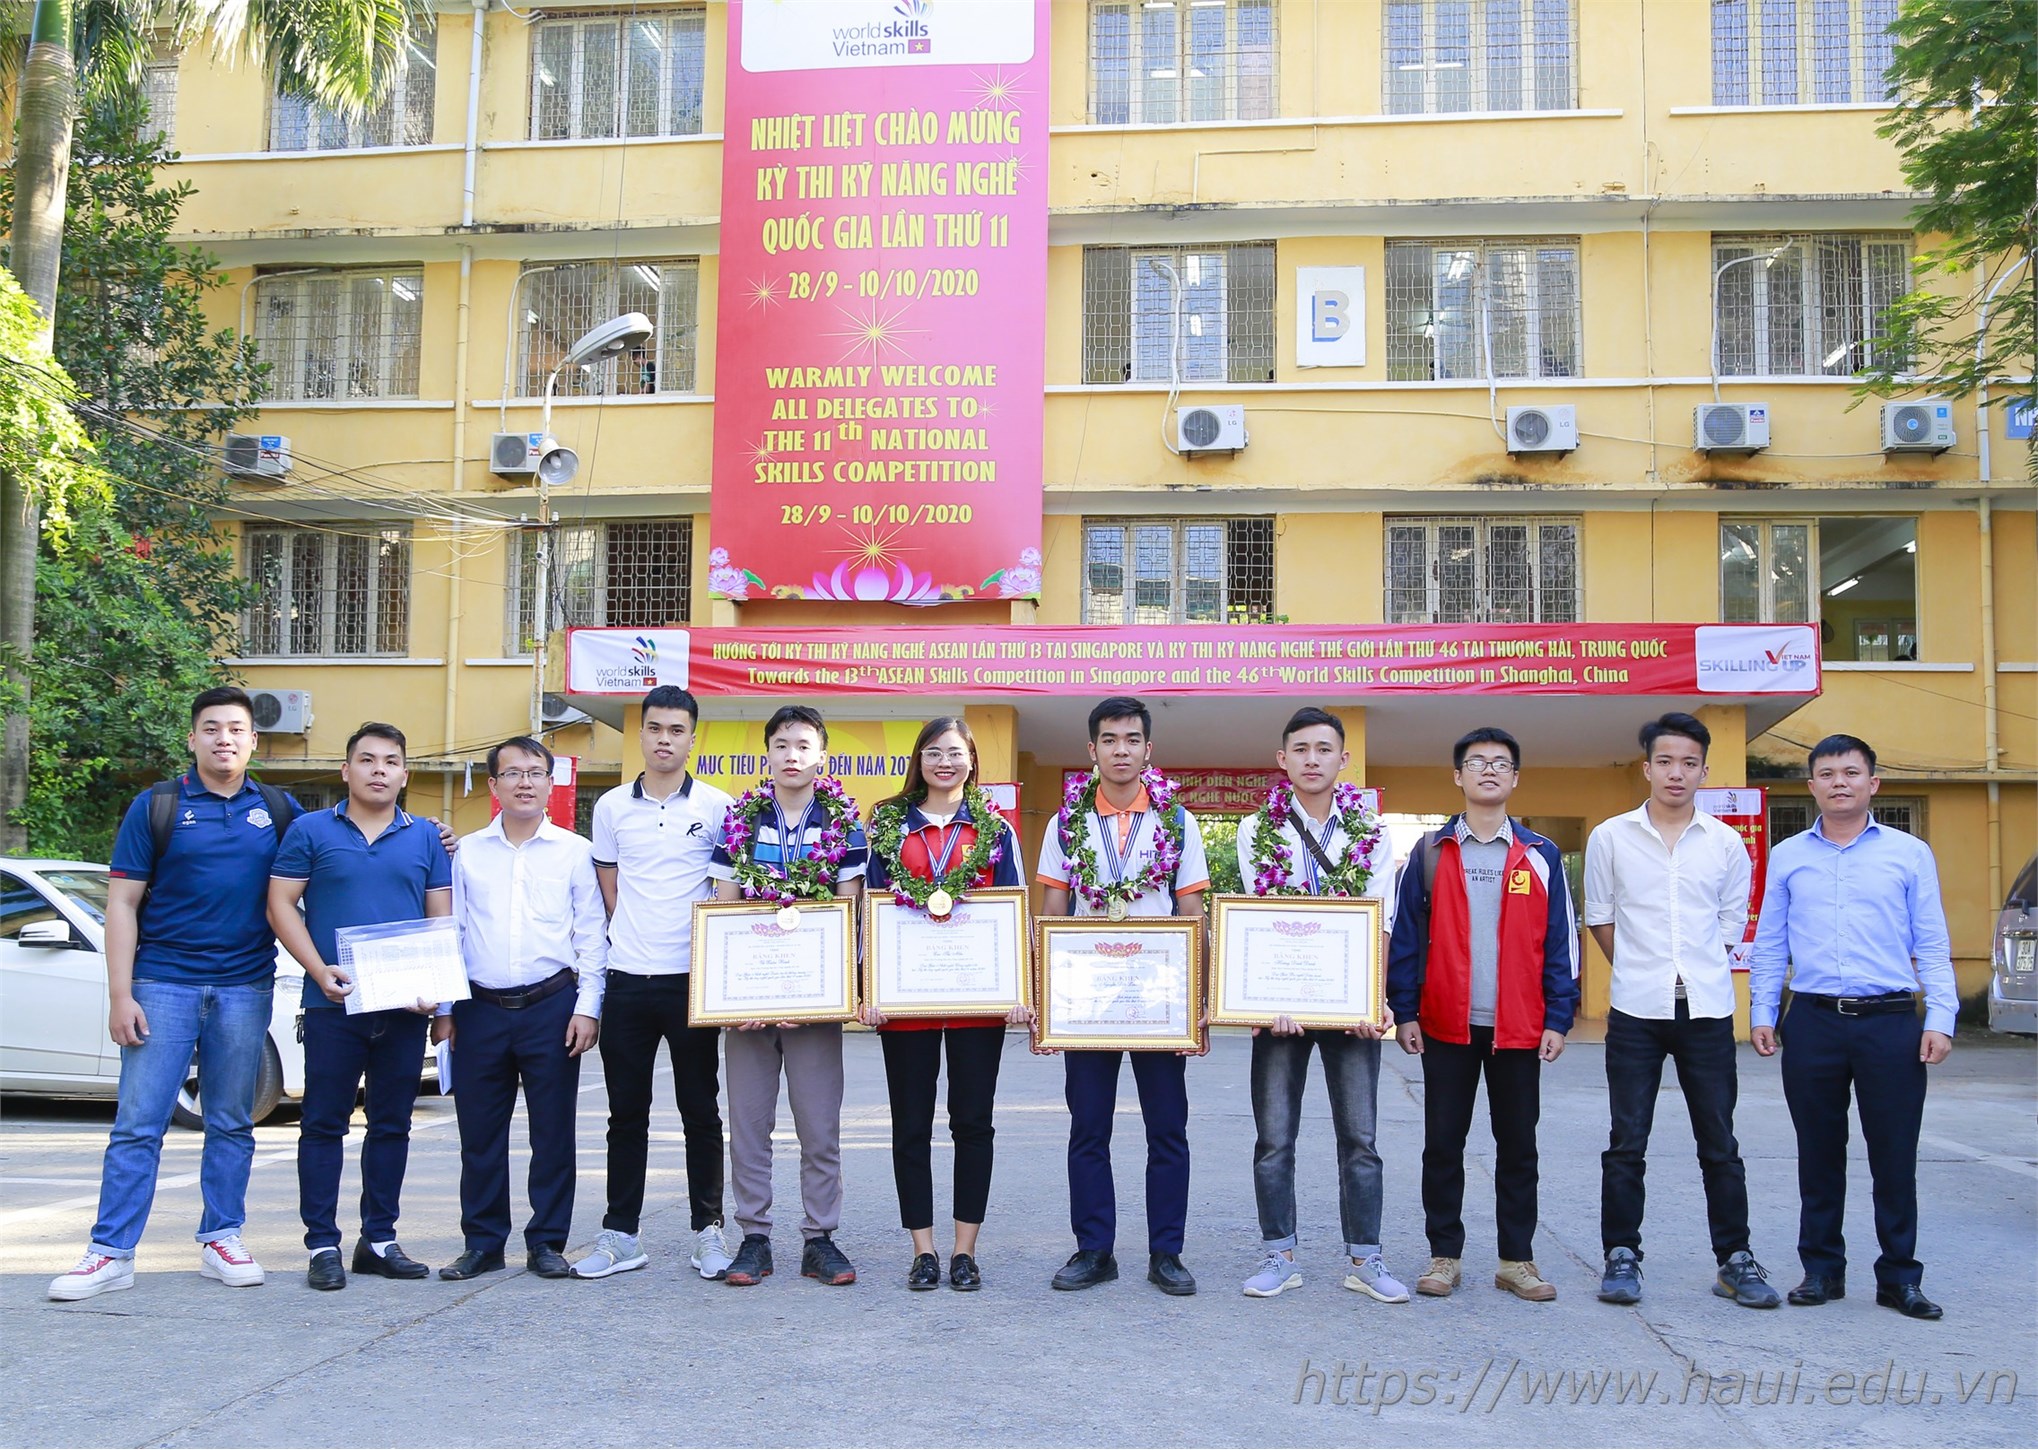 Đoàn thí sinh Đại học Công nghiệp Hà Nội đạt 4 huy chương vàng tại Kỳ thi Kỹ năng nghề Quốc gia năm 2020